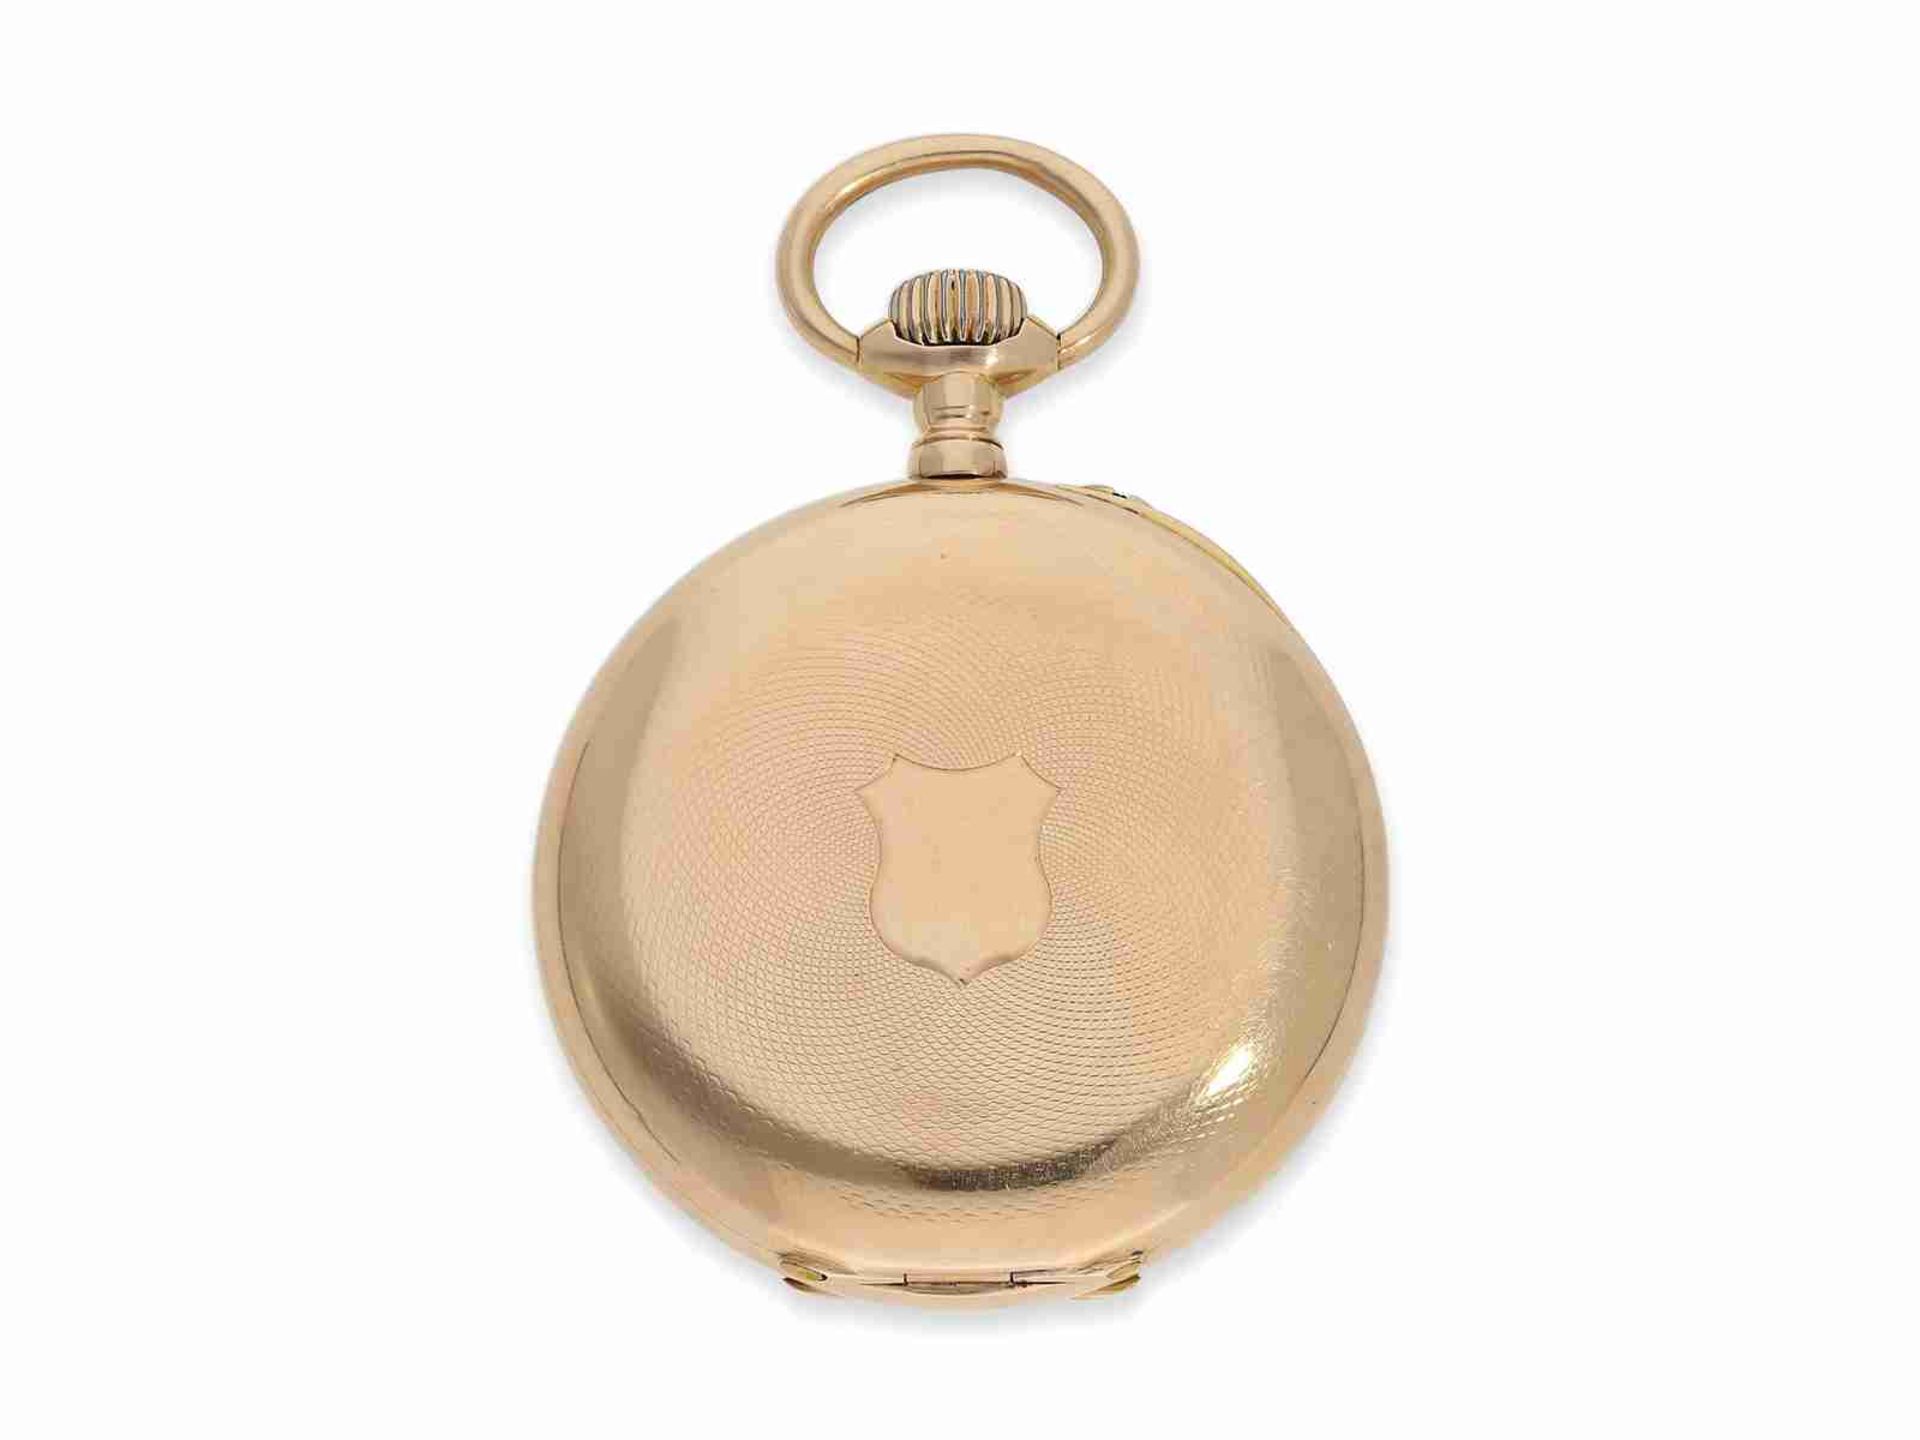 Taschenuhr: hochfeines rotgoldenes Ankerchronometer von Mermod Freres, verkauft durch Türler in Züri - Bild 6 aus 7